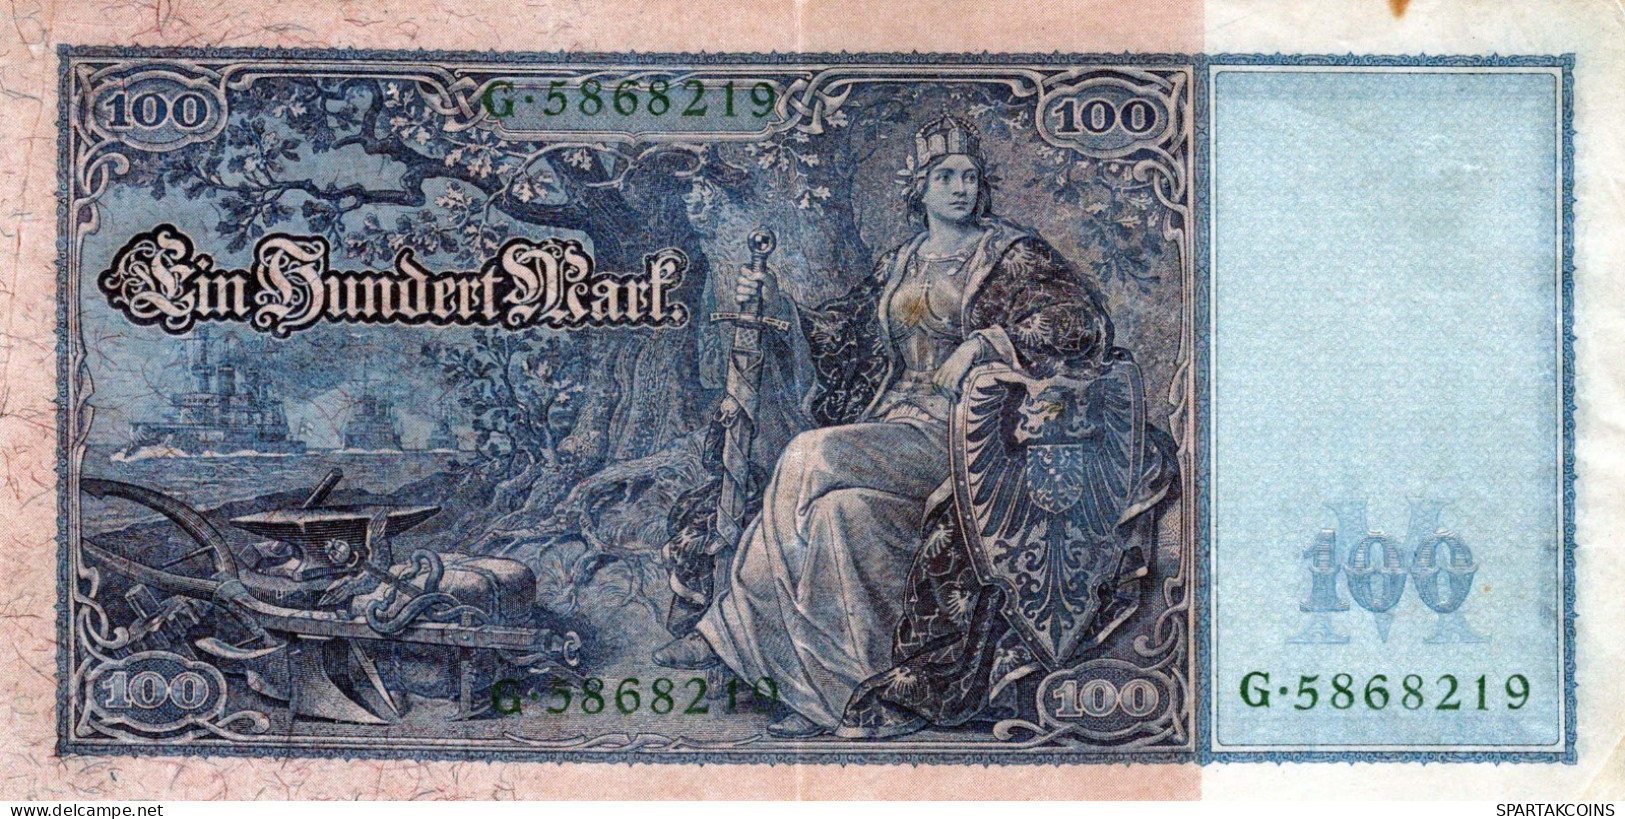 100 MARK 1910 DEUTSCHLAND Papiergeld Banknote #PL234 - [11] Lokale Uitgaven